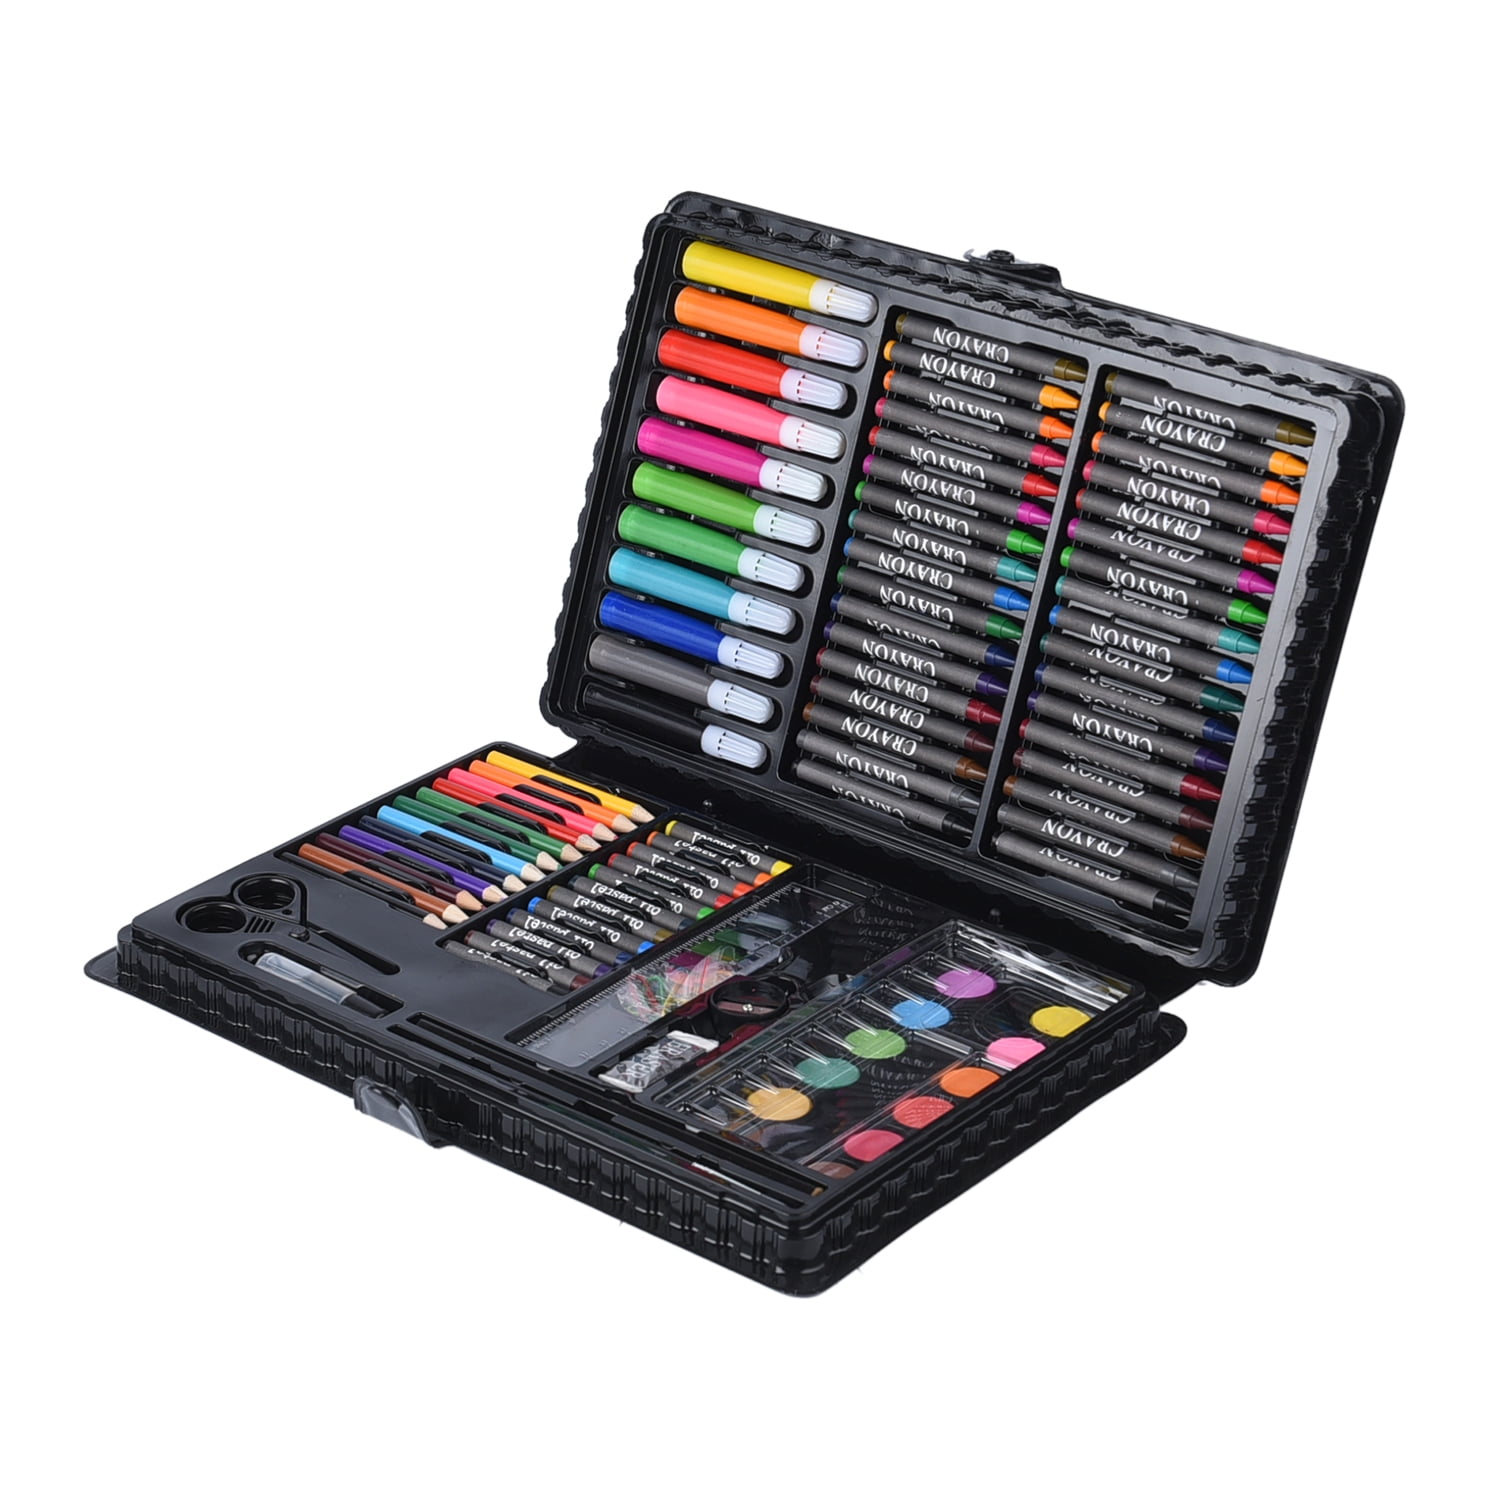 Details about   Kids Colouring Set Drawing Set 50-208PCS Art Case Pencils Painting Childrens